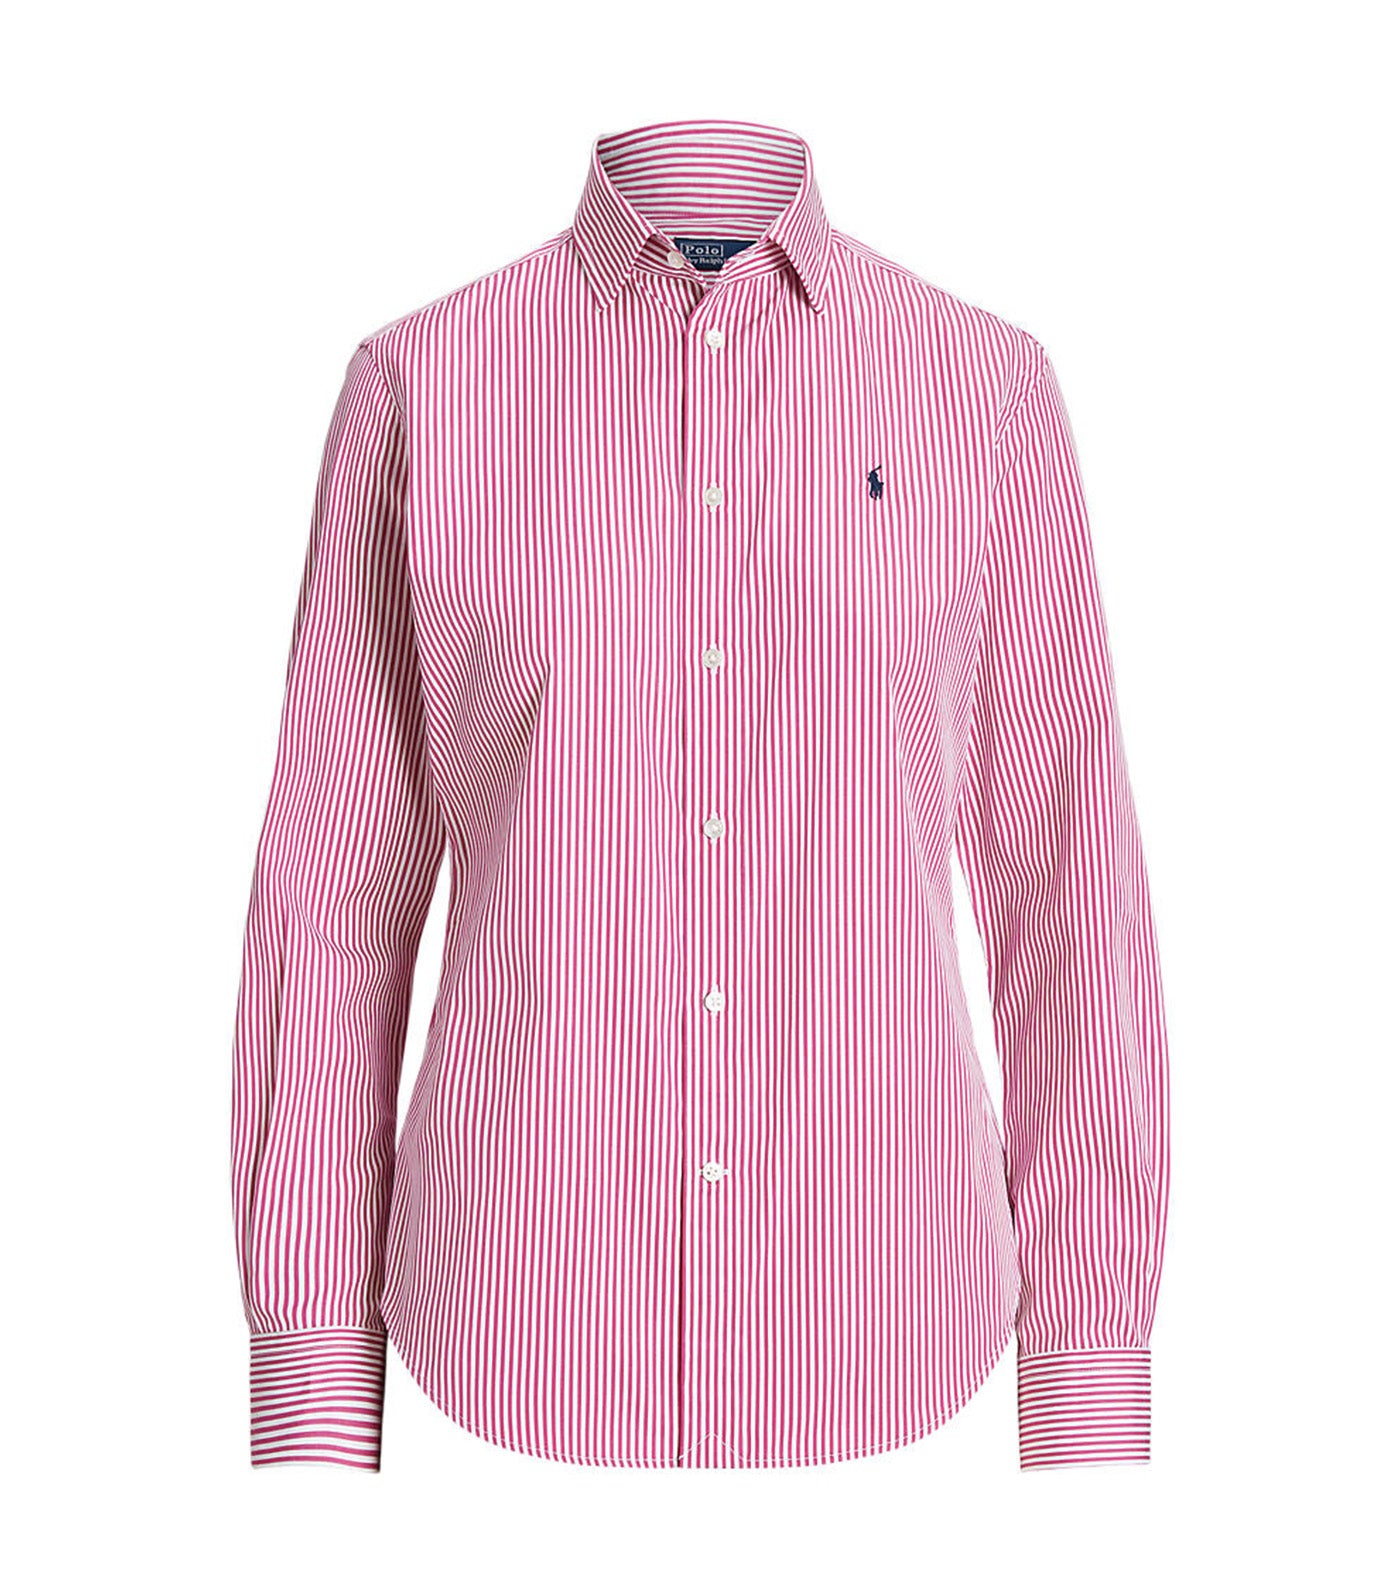 Women's Striped Cotton Shirt White/Vivid Pink